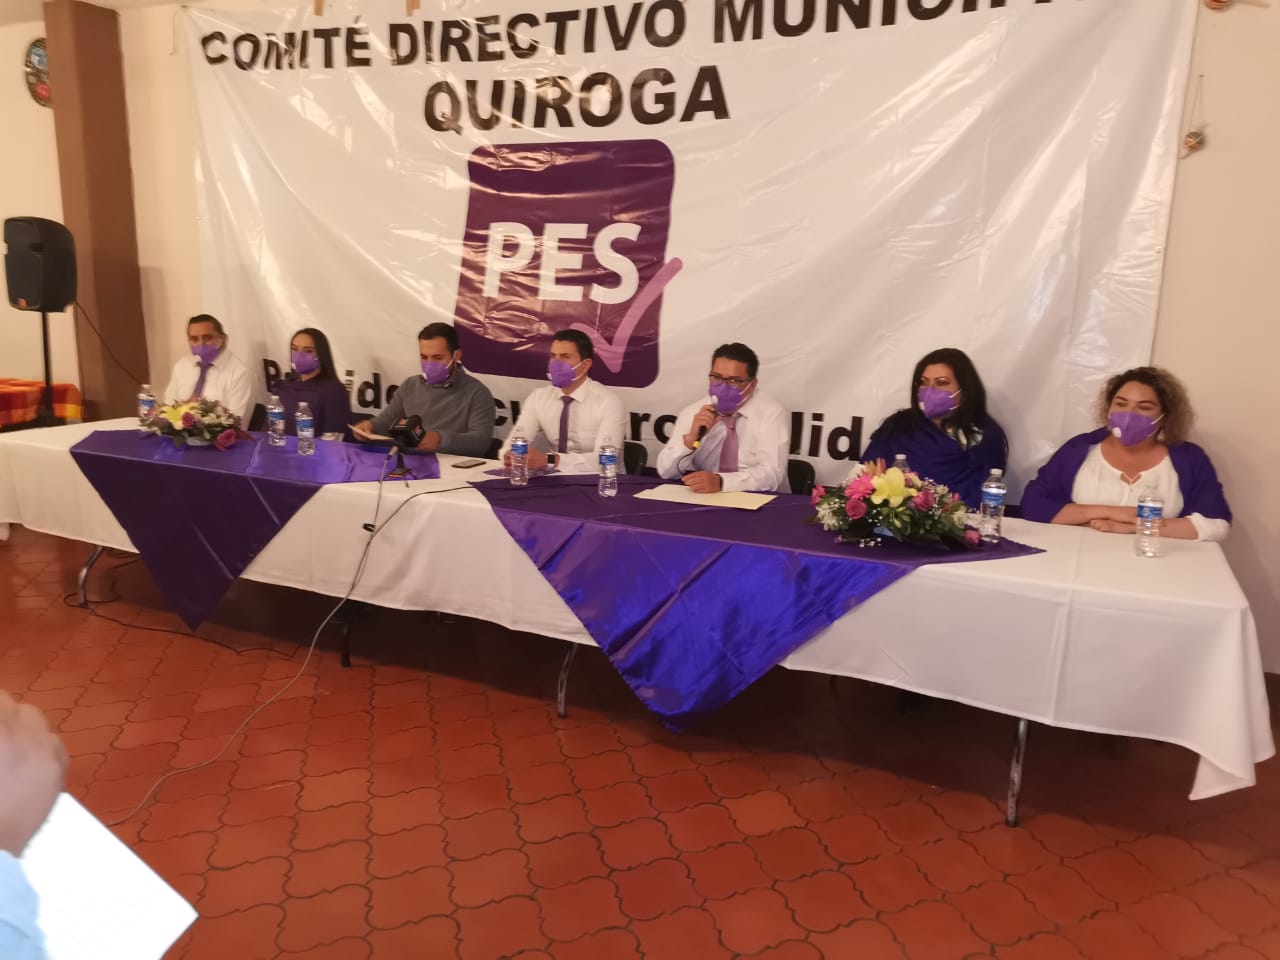 PES de Quiroga tiene nuevo Comité; Eder López García le toma protesta